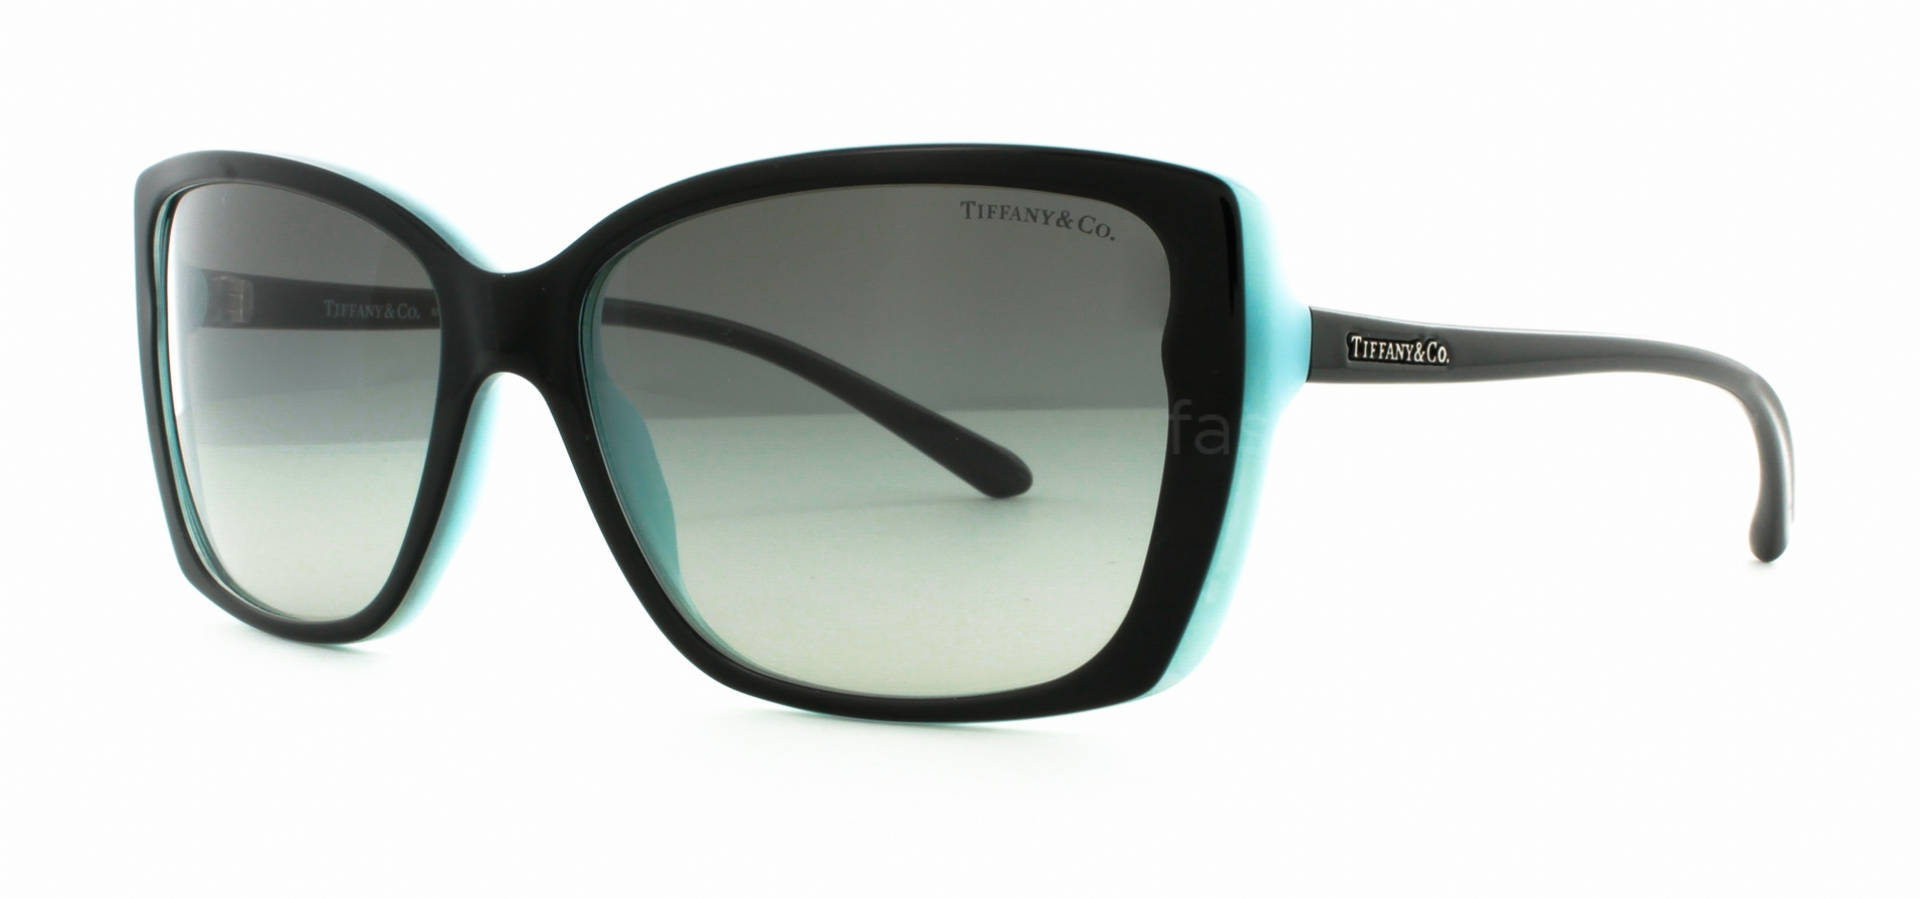 Elegance in vision - Tiffany&Co. TF4090-b Sun Glasses in Havana Blue. Wallpaper